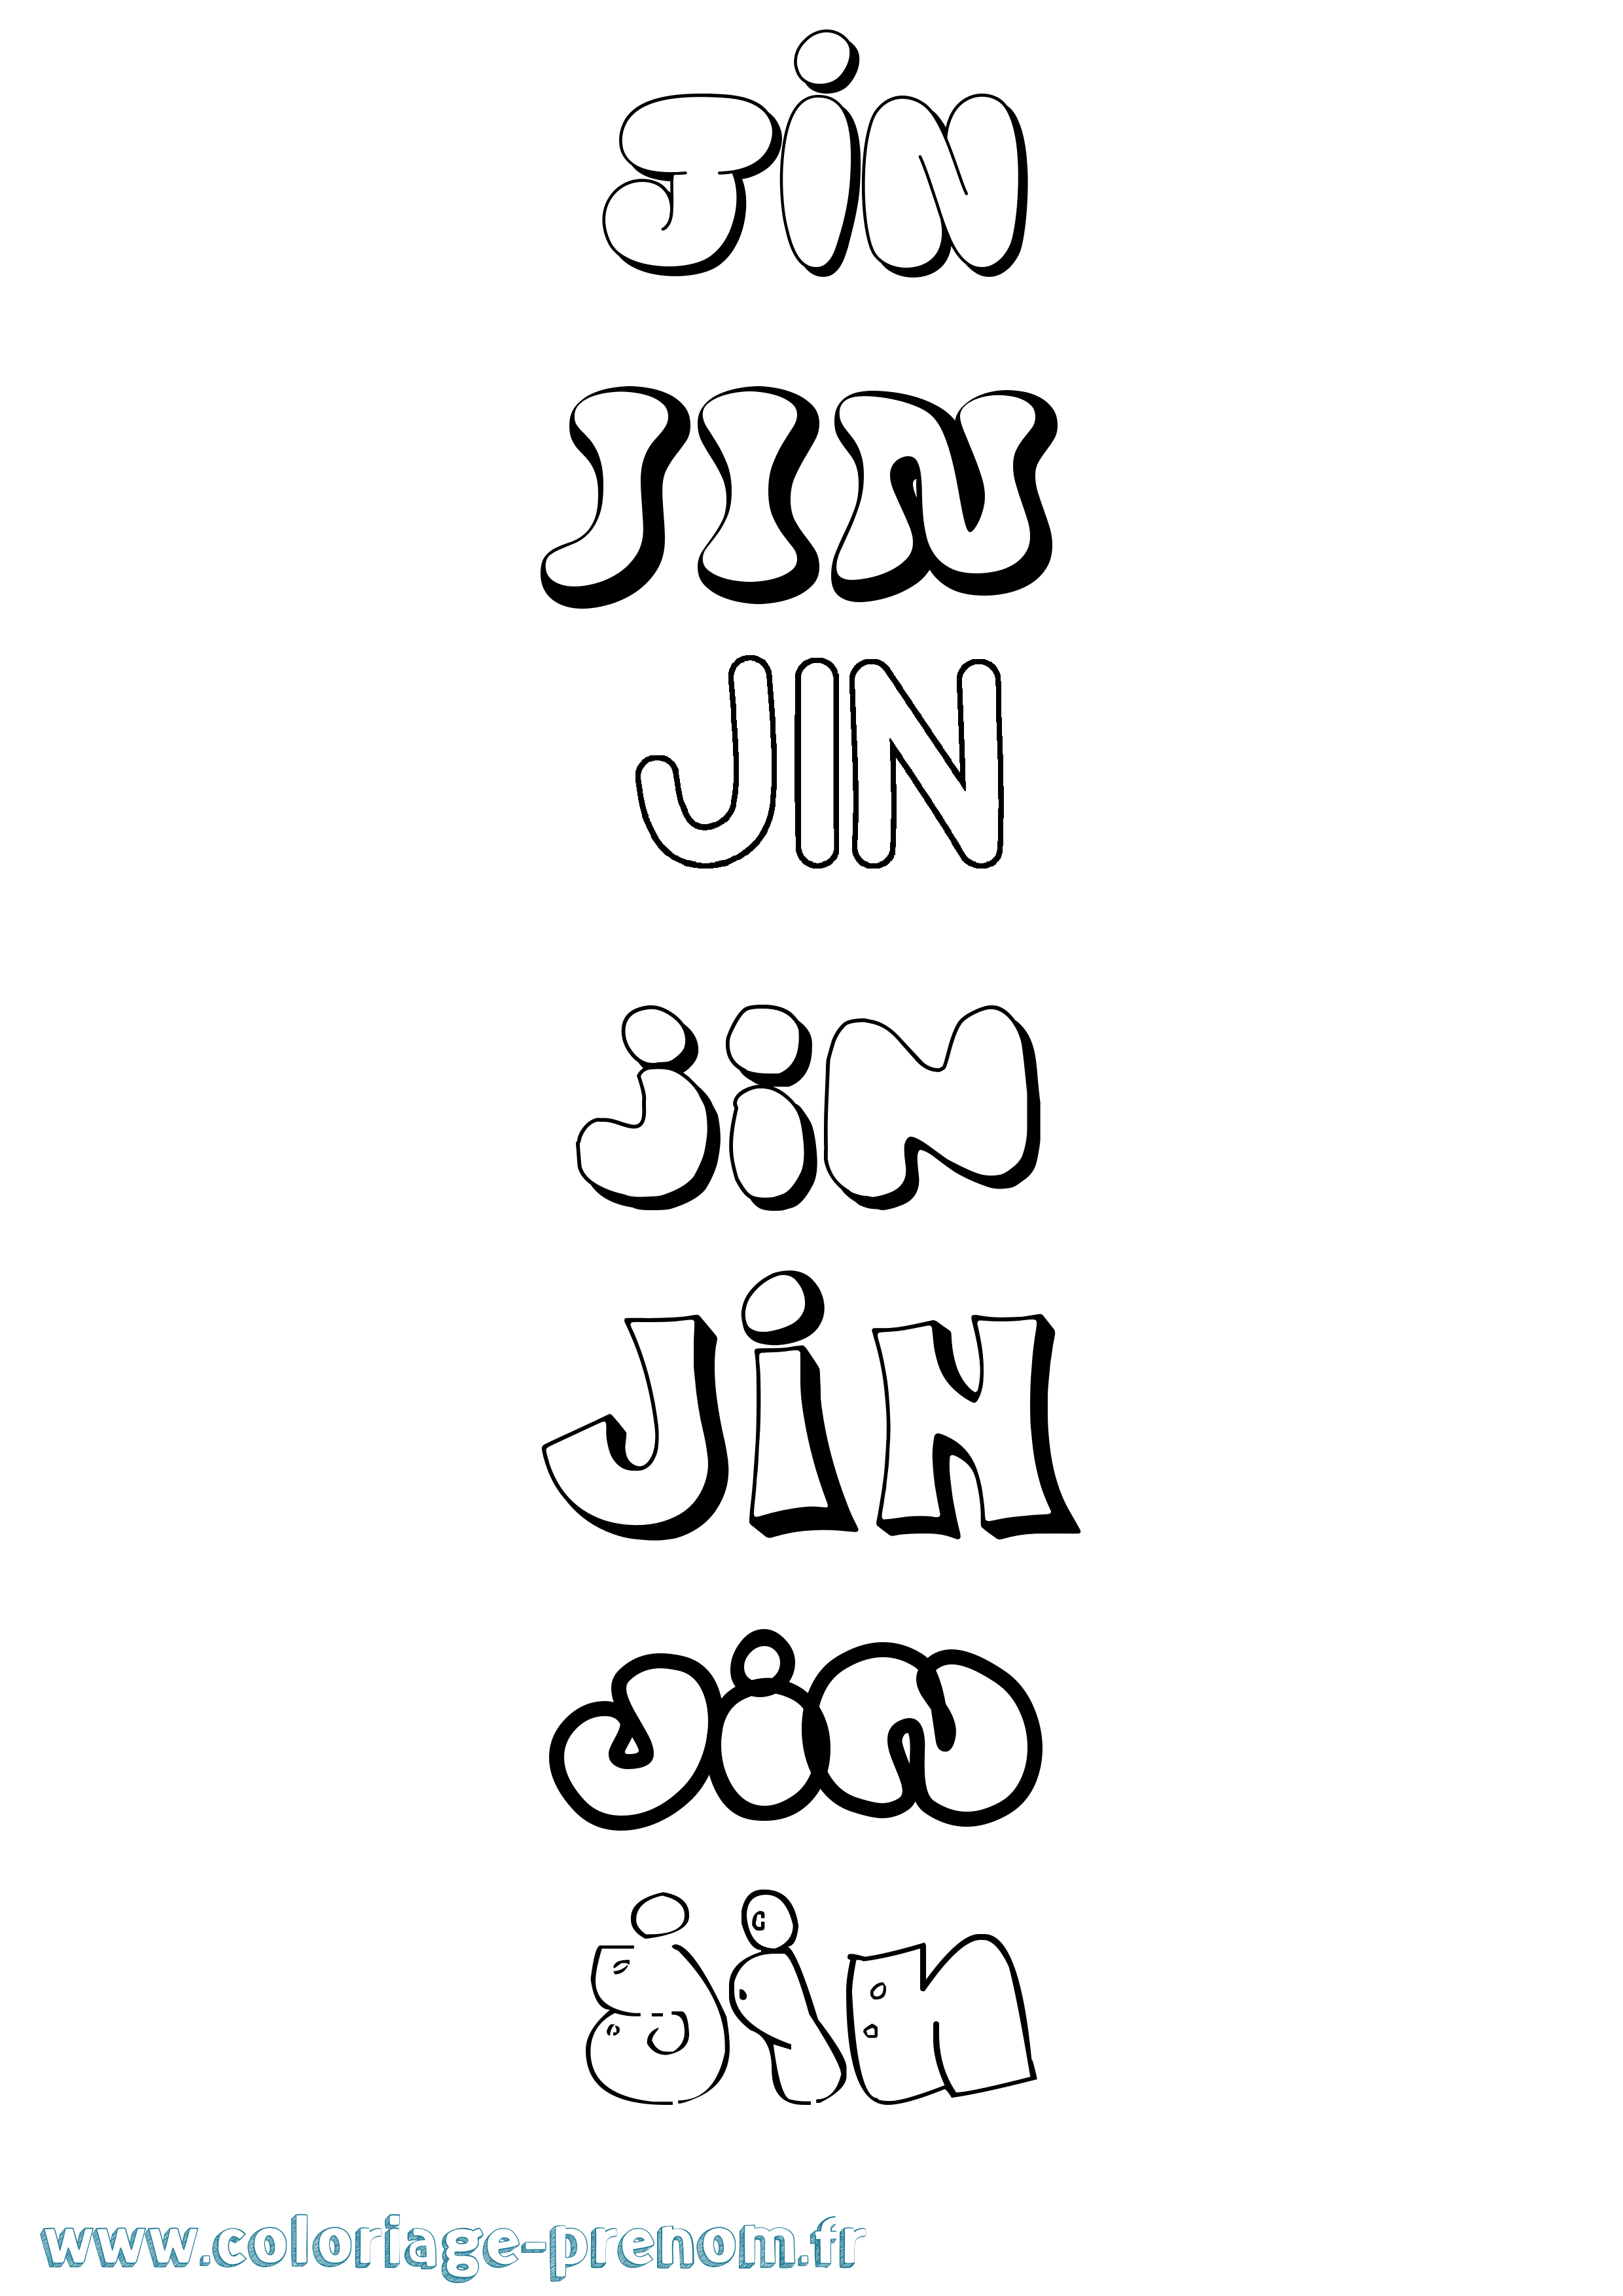 Coloriage prénom Jin Bubble